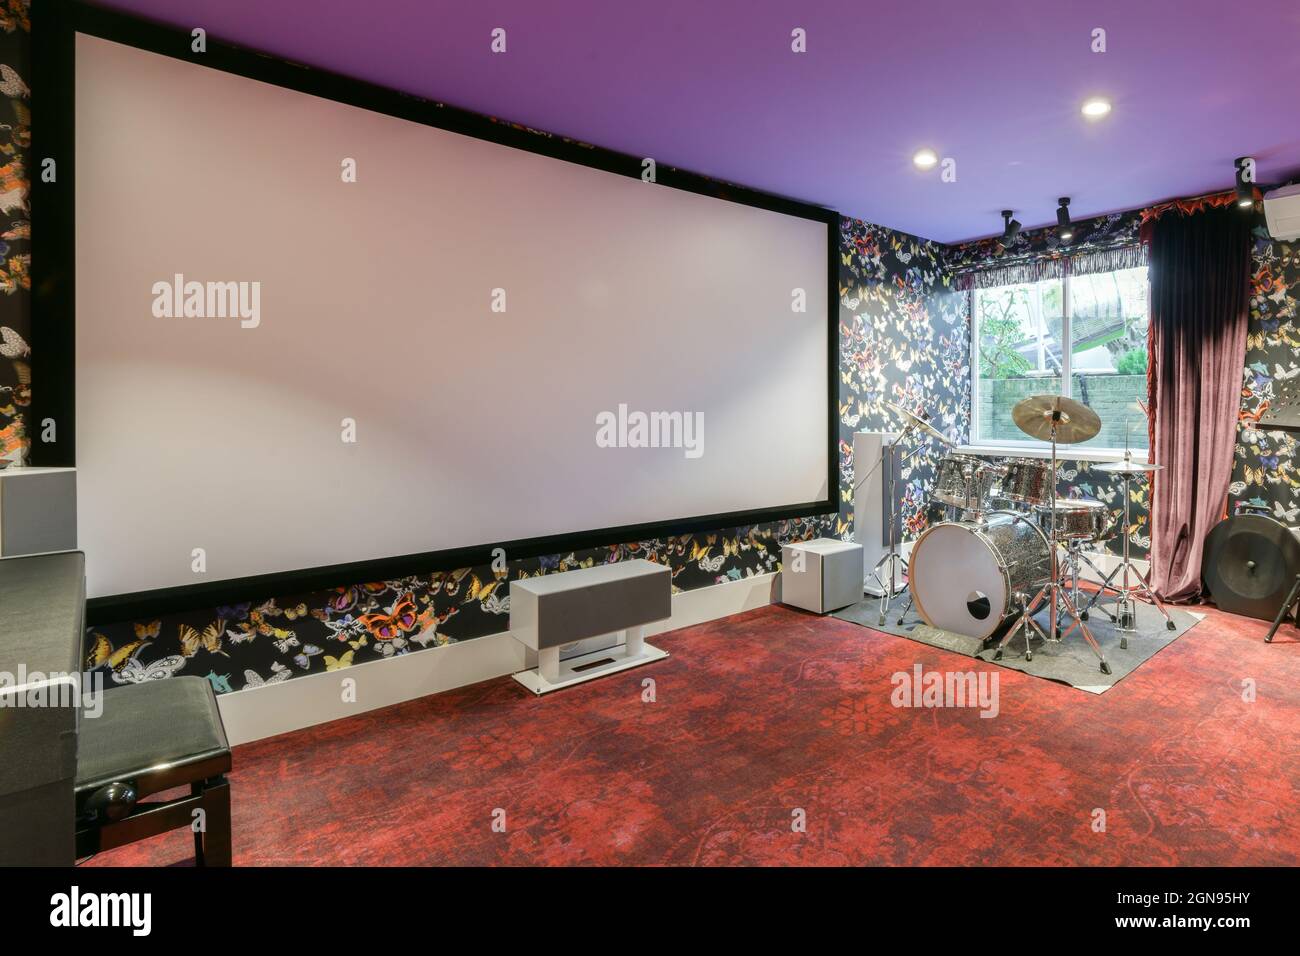 Private home cinema interior design Stock Photo